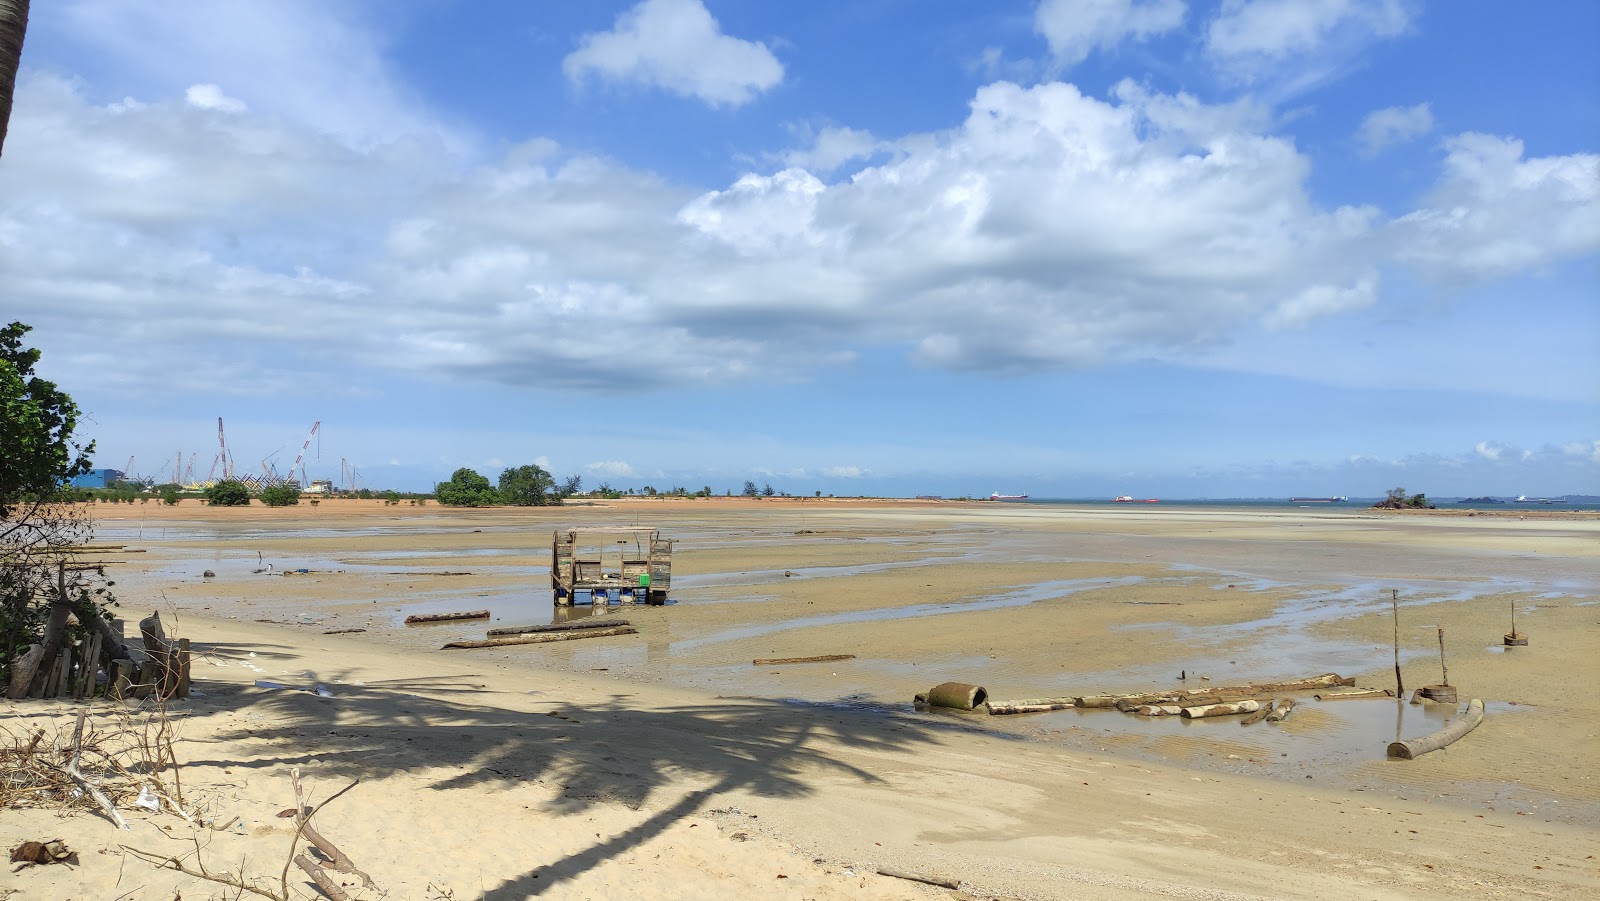 Pantai Panau'in fotoğrafı geniş ile birlikte